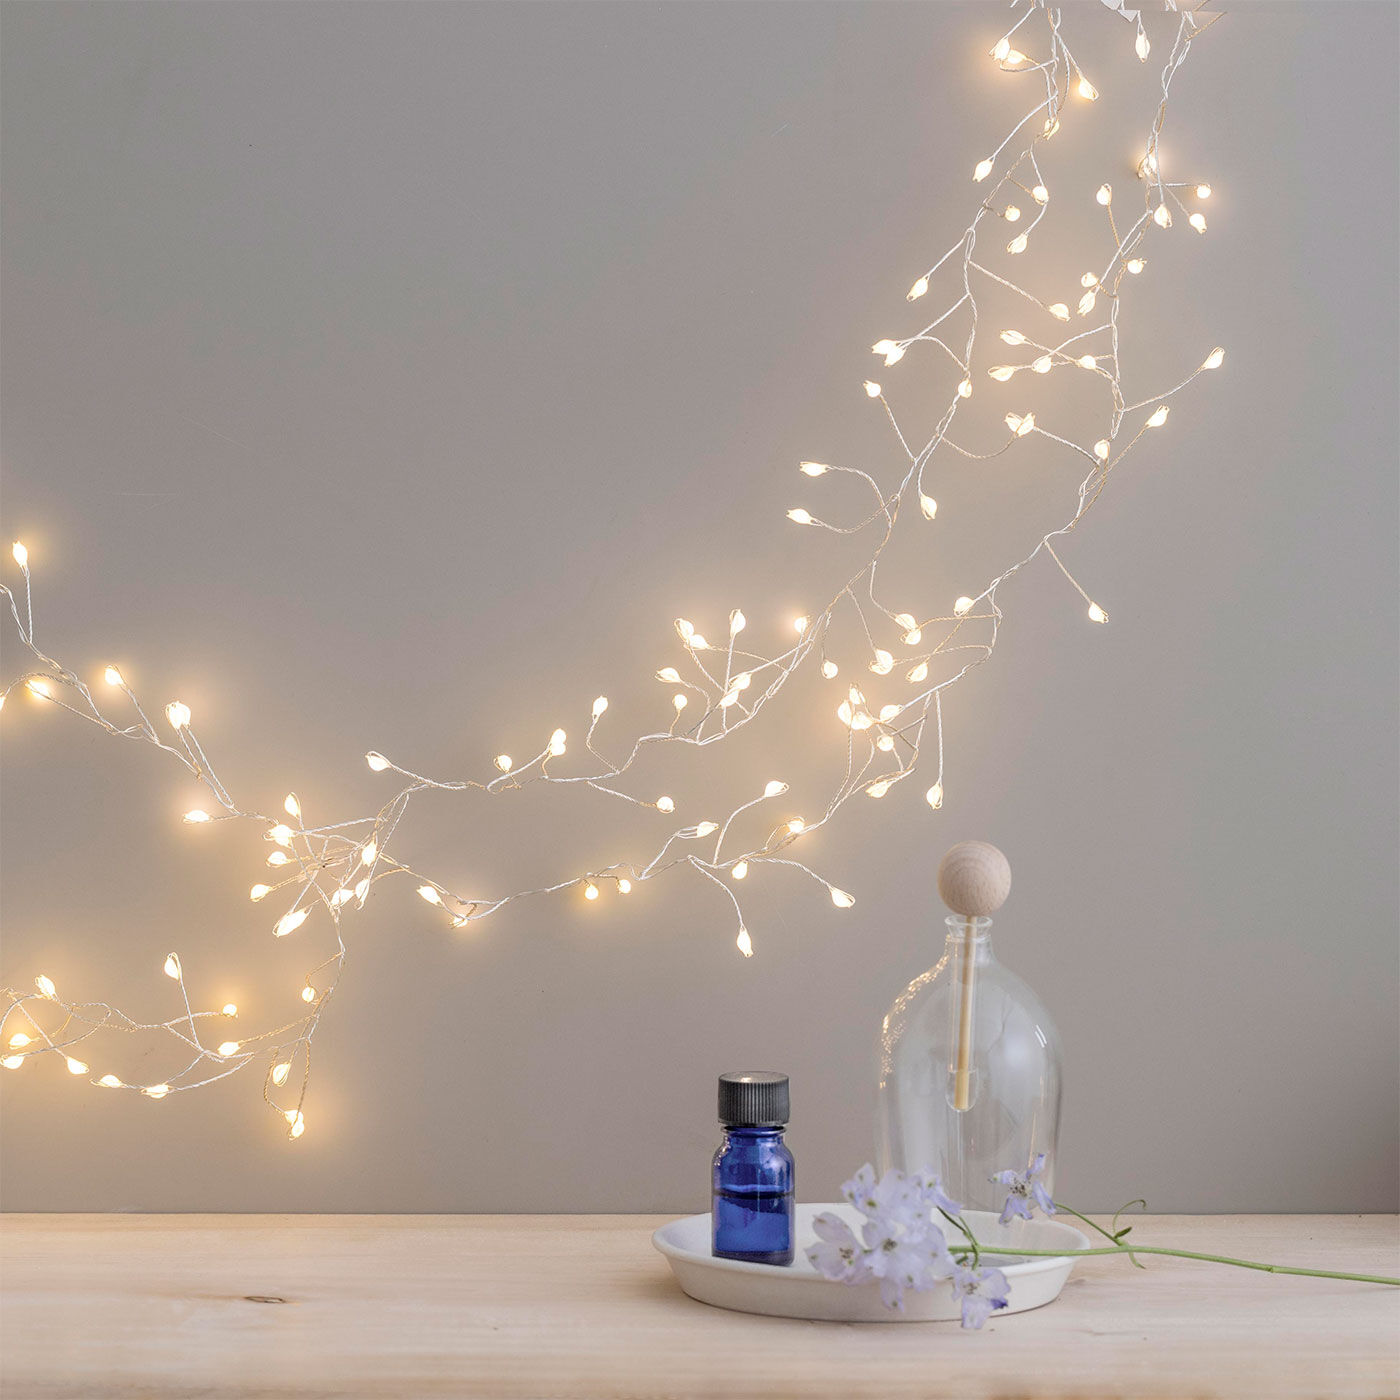 クリスマス ボトル 雪 LED 光る ライトアップ 木の実 ドライフラワー 飾り